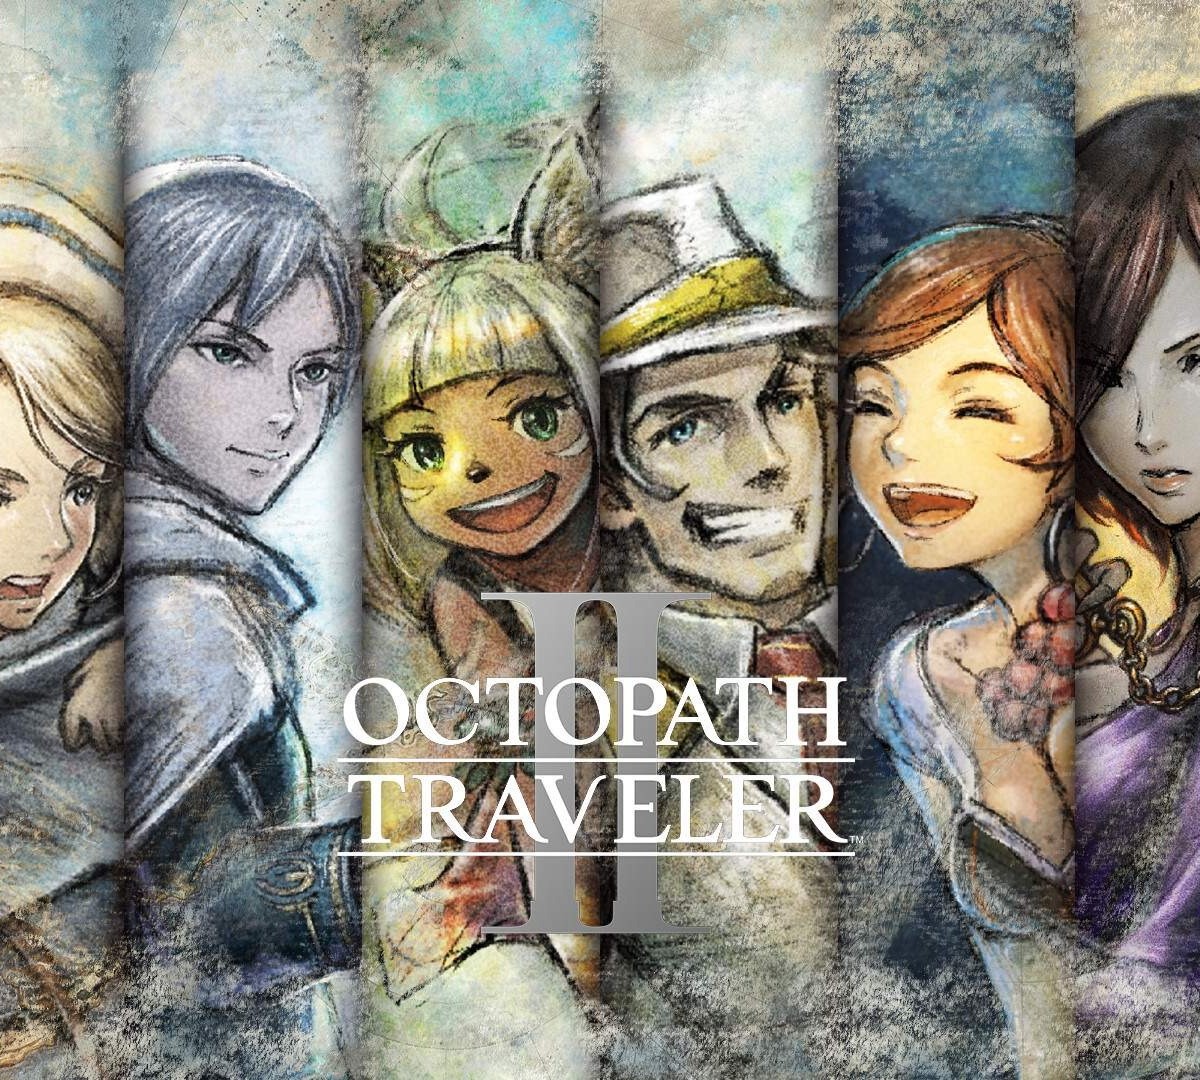 Octopath Traveler II ultrapassa um milhão de cópias vendidas ao redor do  mundo